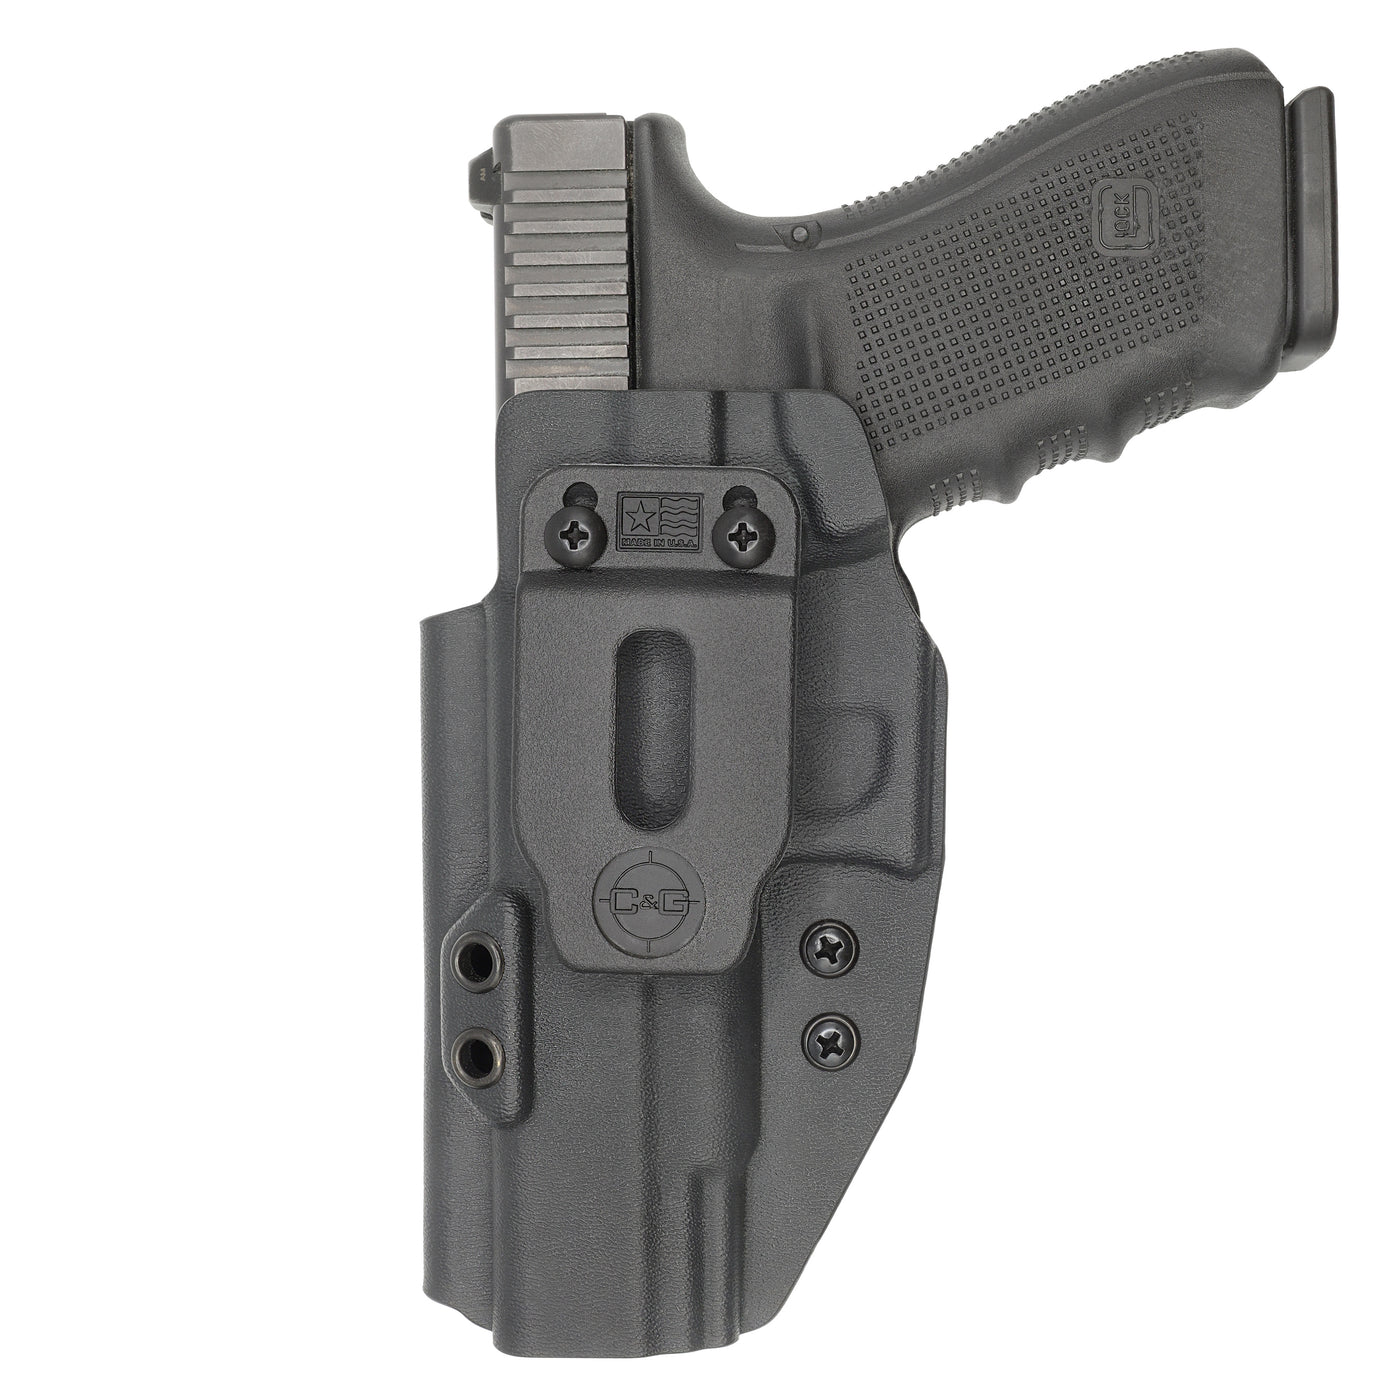 C&G Holsters Quickship IWB Covert Glock 20/21 in holstered position LEFT HAND